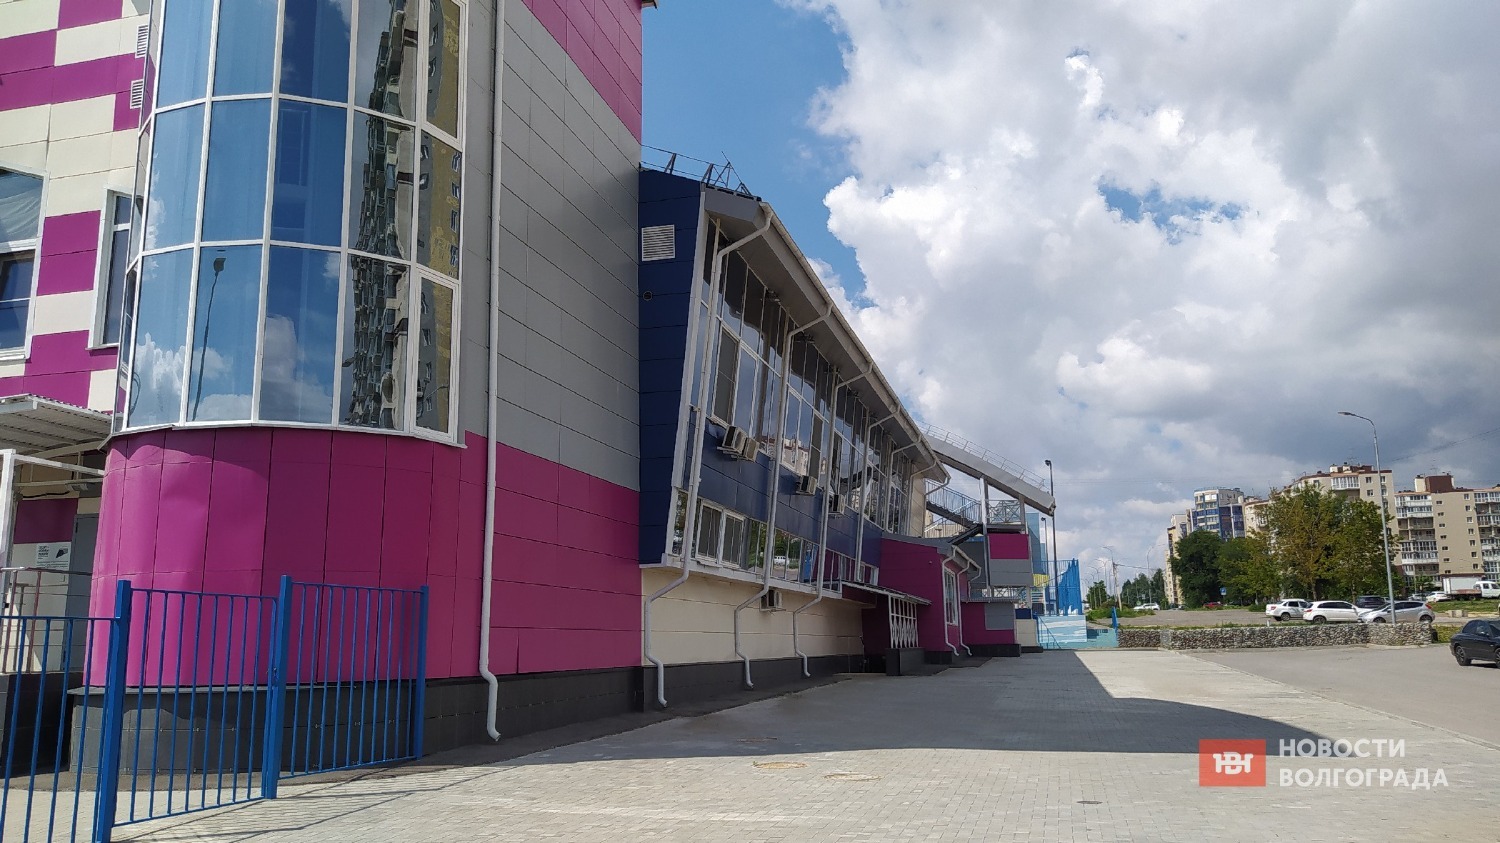 Современный центр развития гандбола имени Акопяна в Дзержинском районе в Волгограде